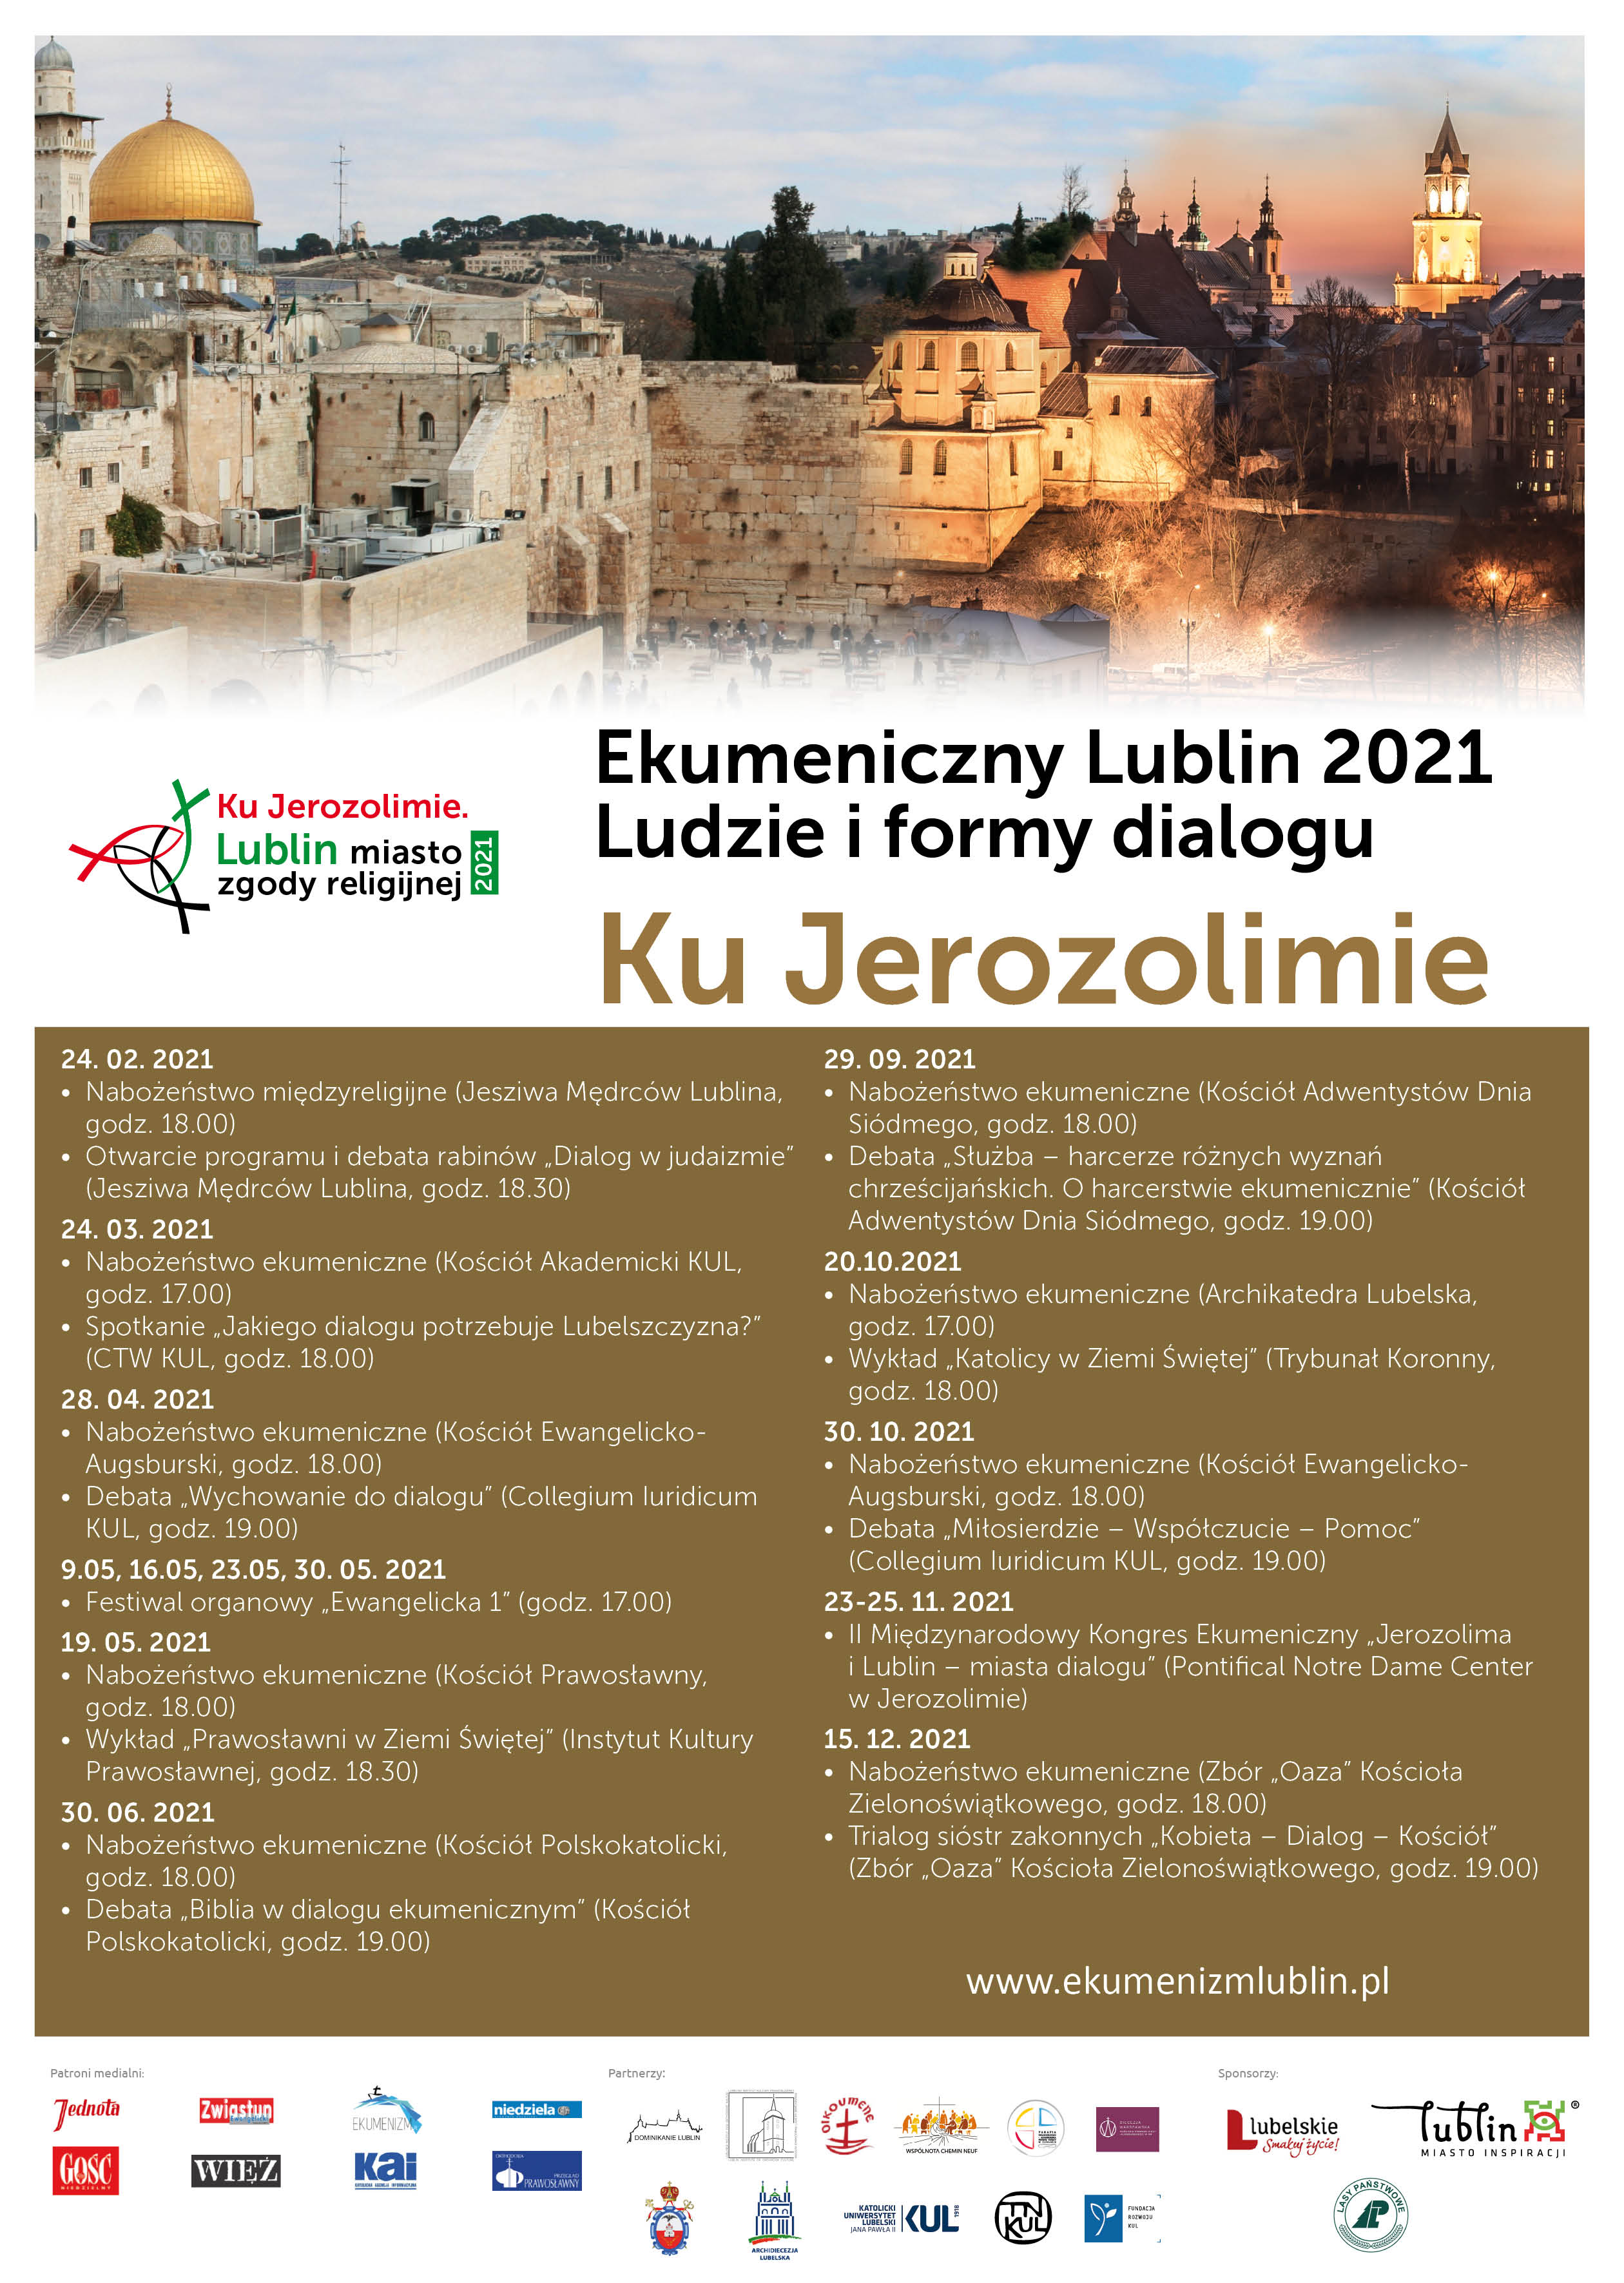 Lublin Ekumeniczny 2021